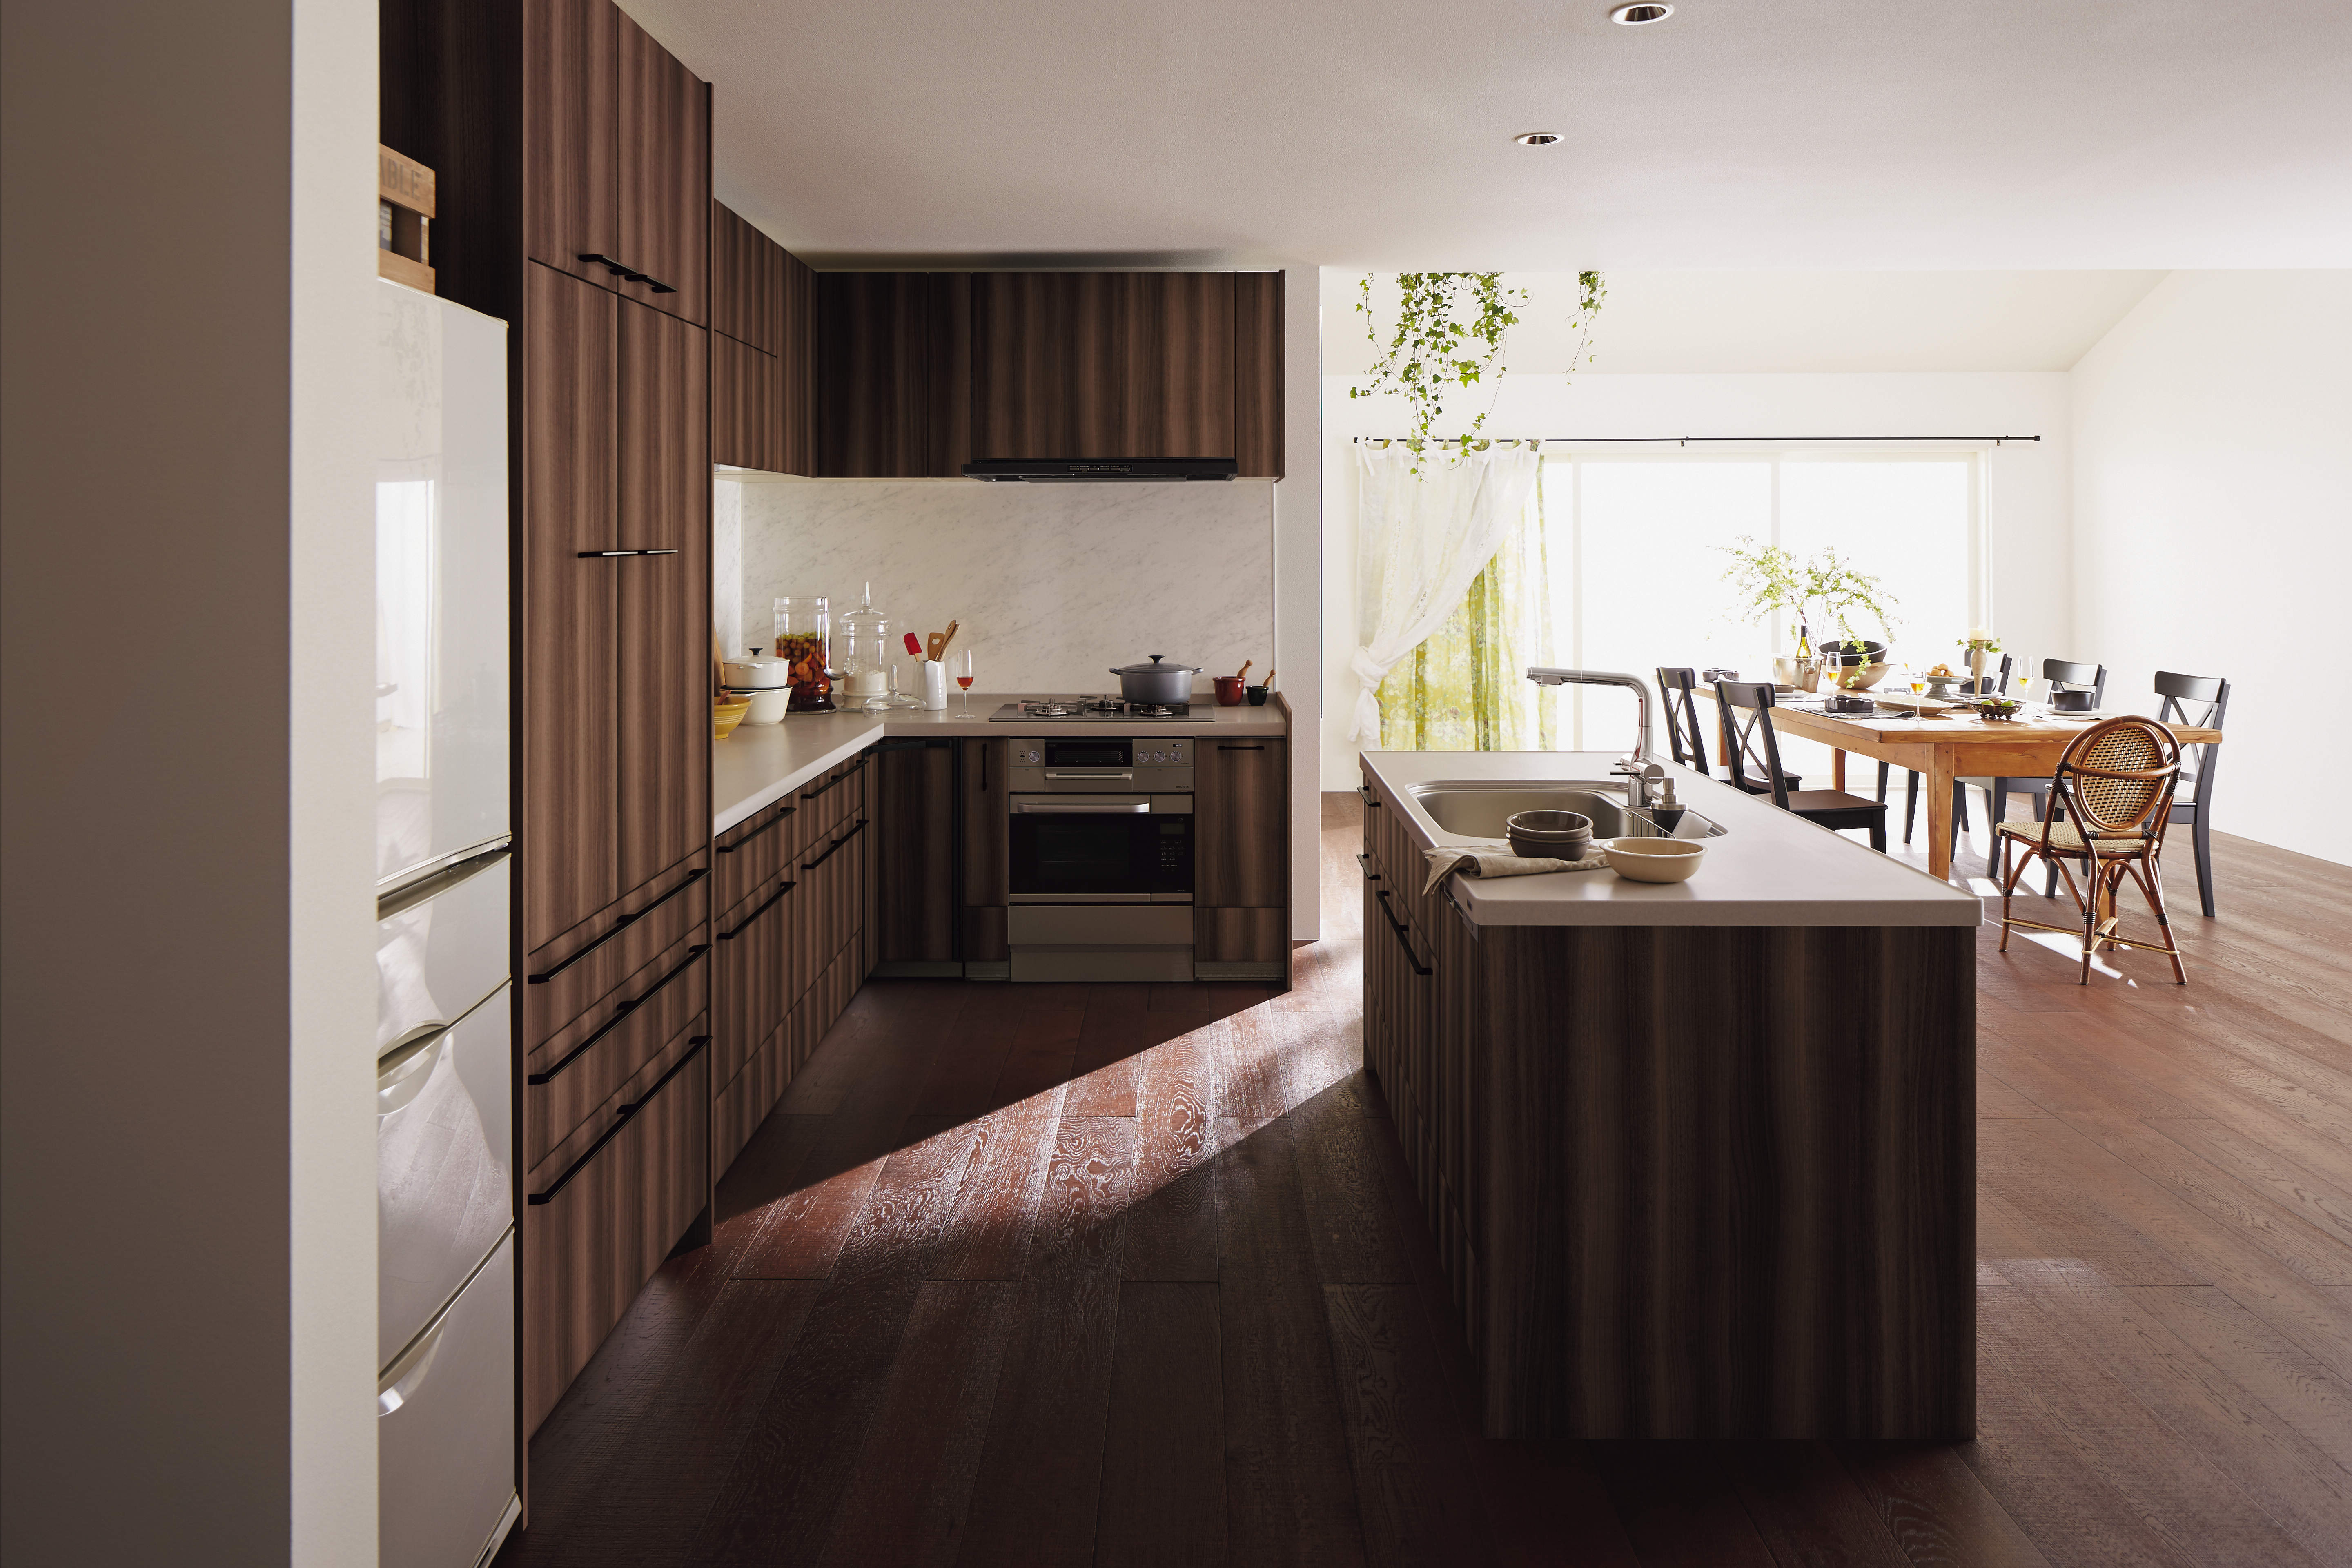 ウッディな床と木目のアイランドキッチンで開放的なLDK サムネイル画像